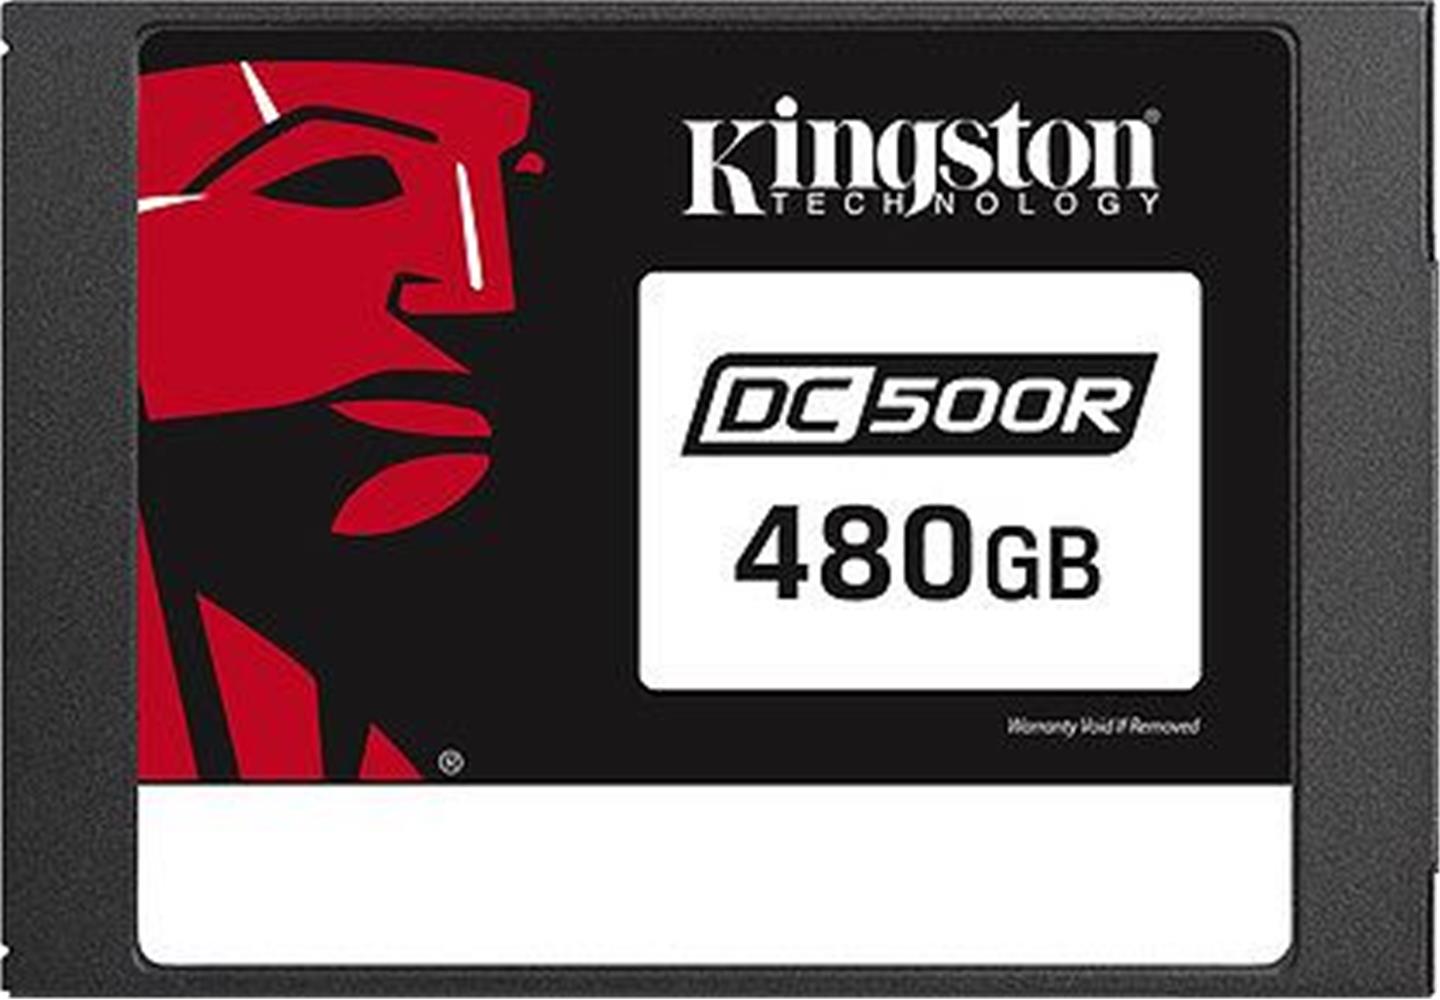 Kingston 480 GB DC500R Enterprise SEDC500R-480G 2.5